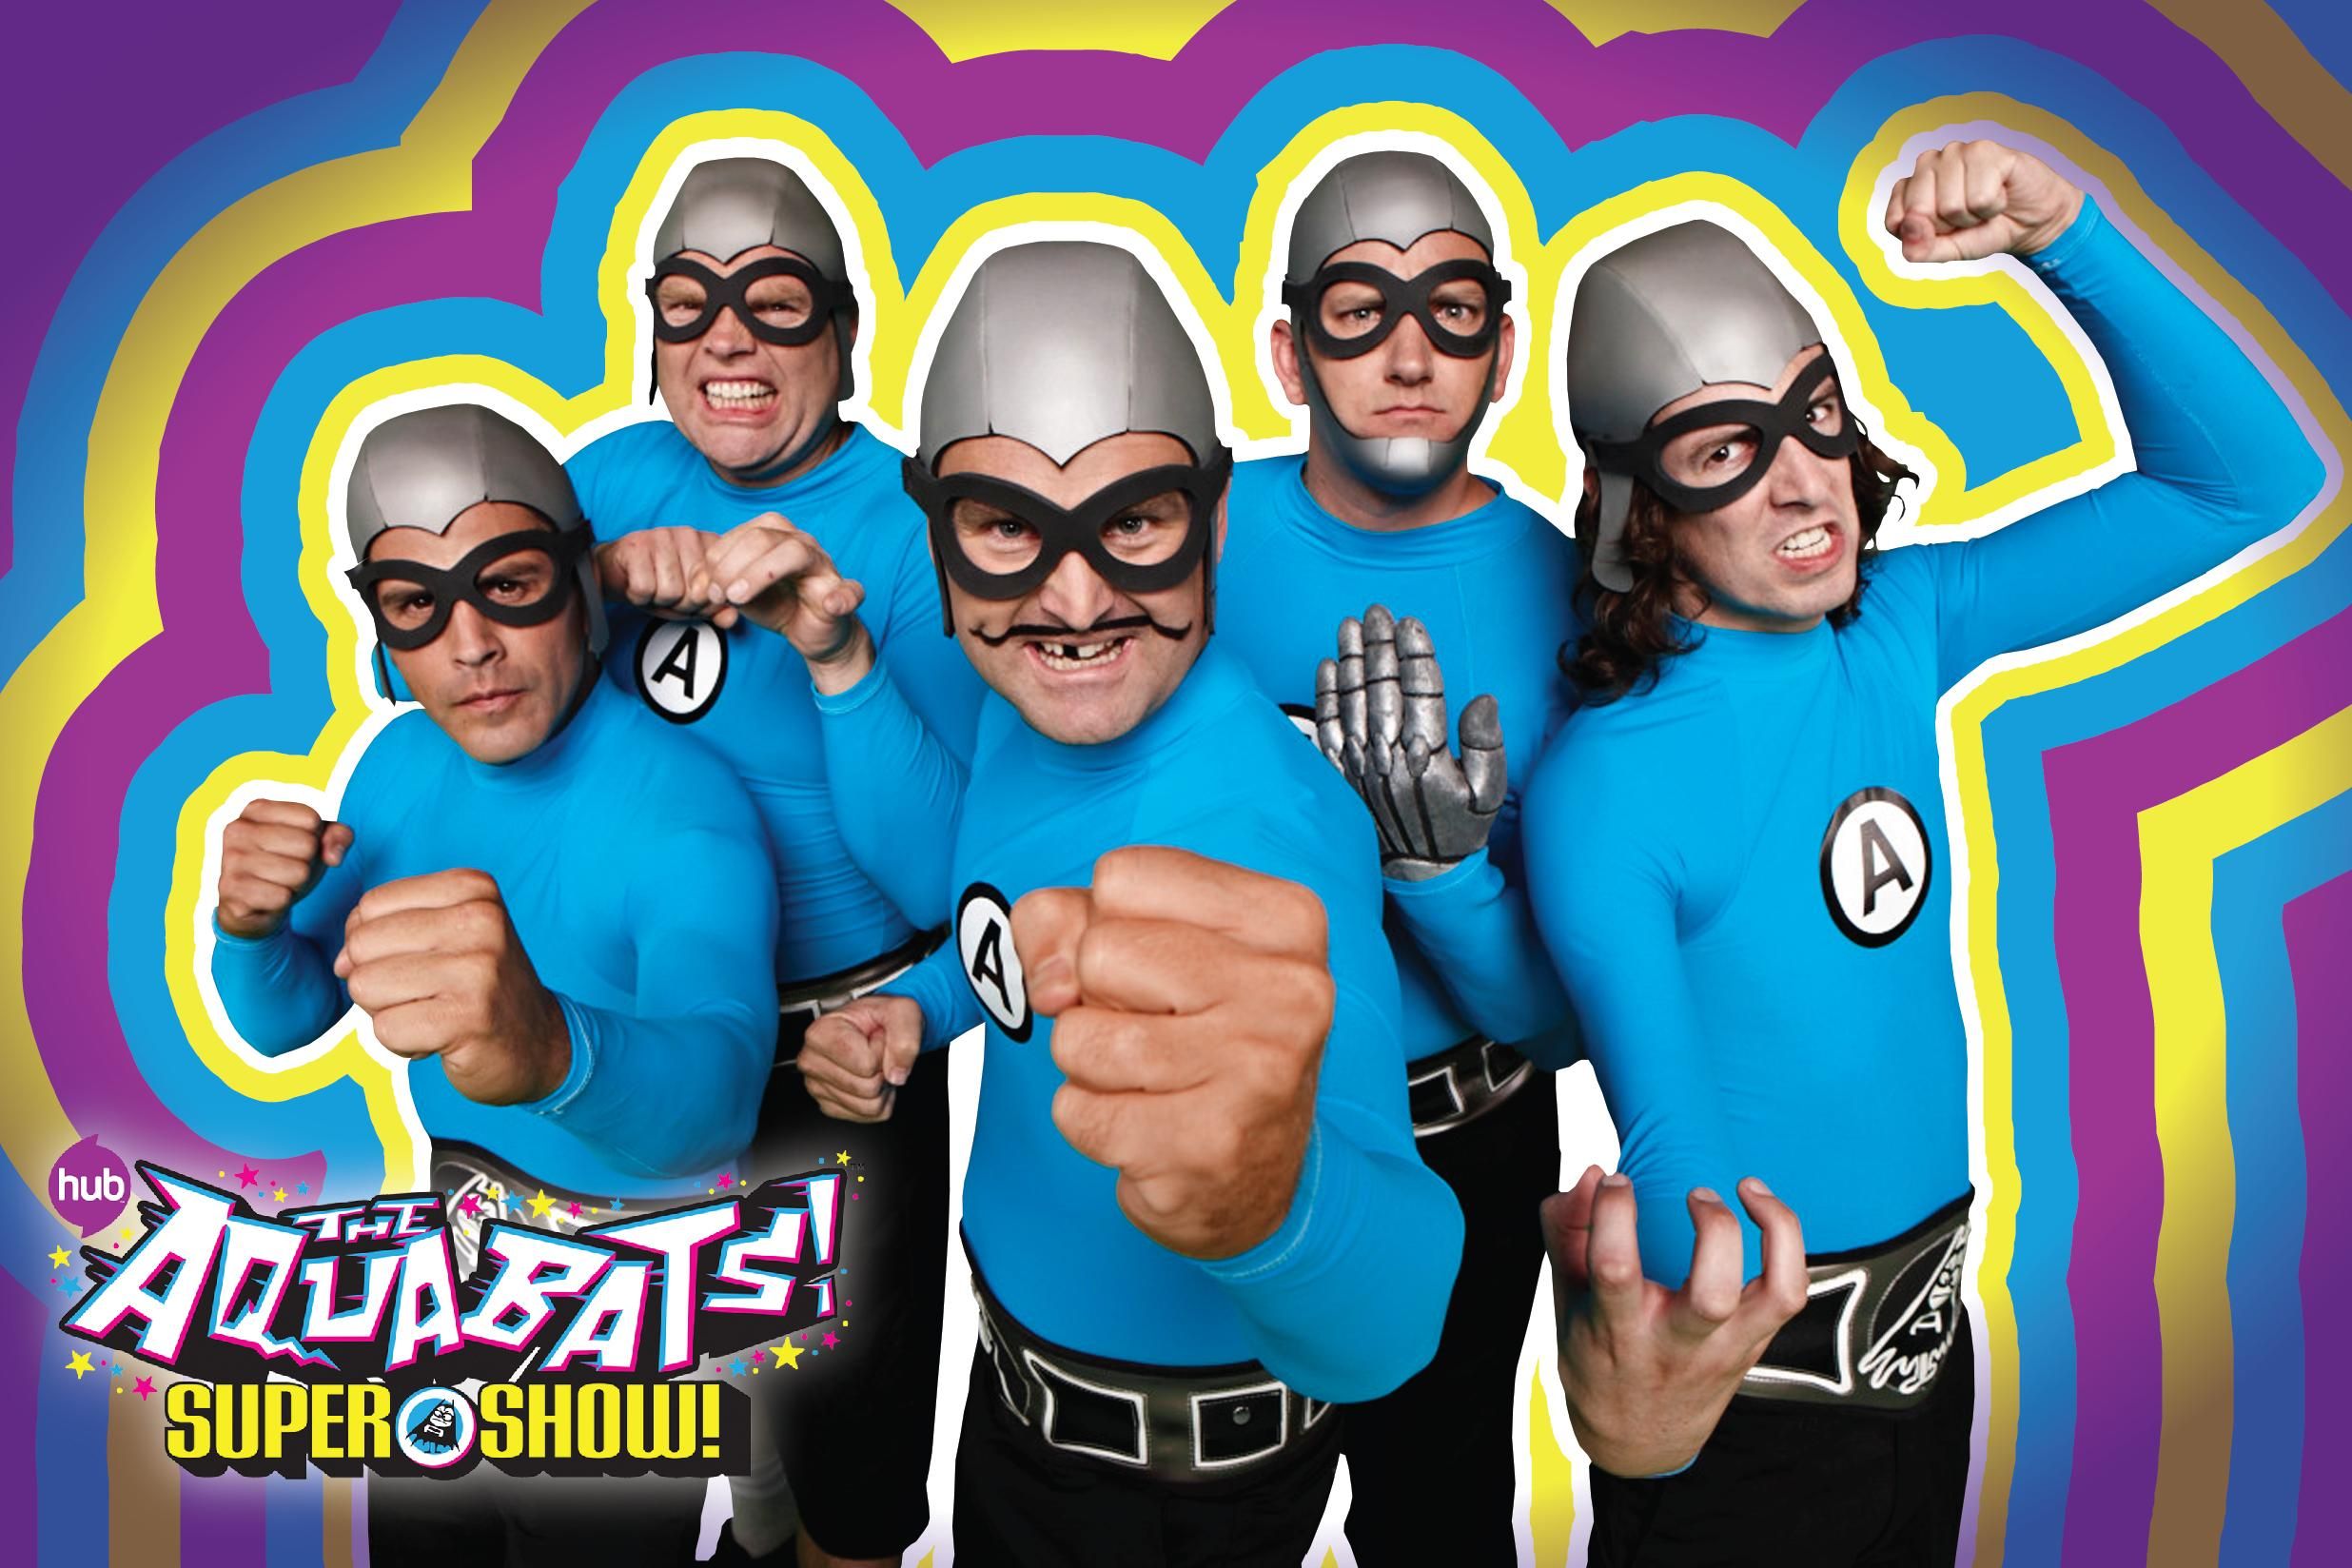 The Aquabats! Super Show! Promo #1